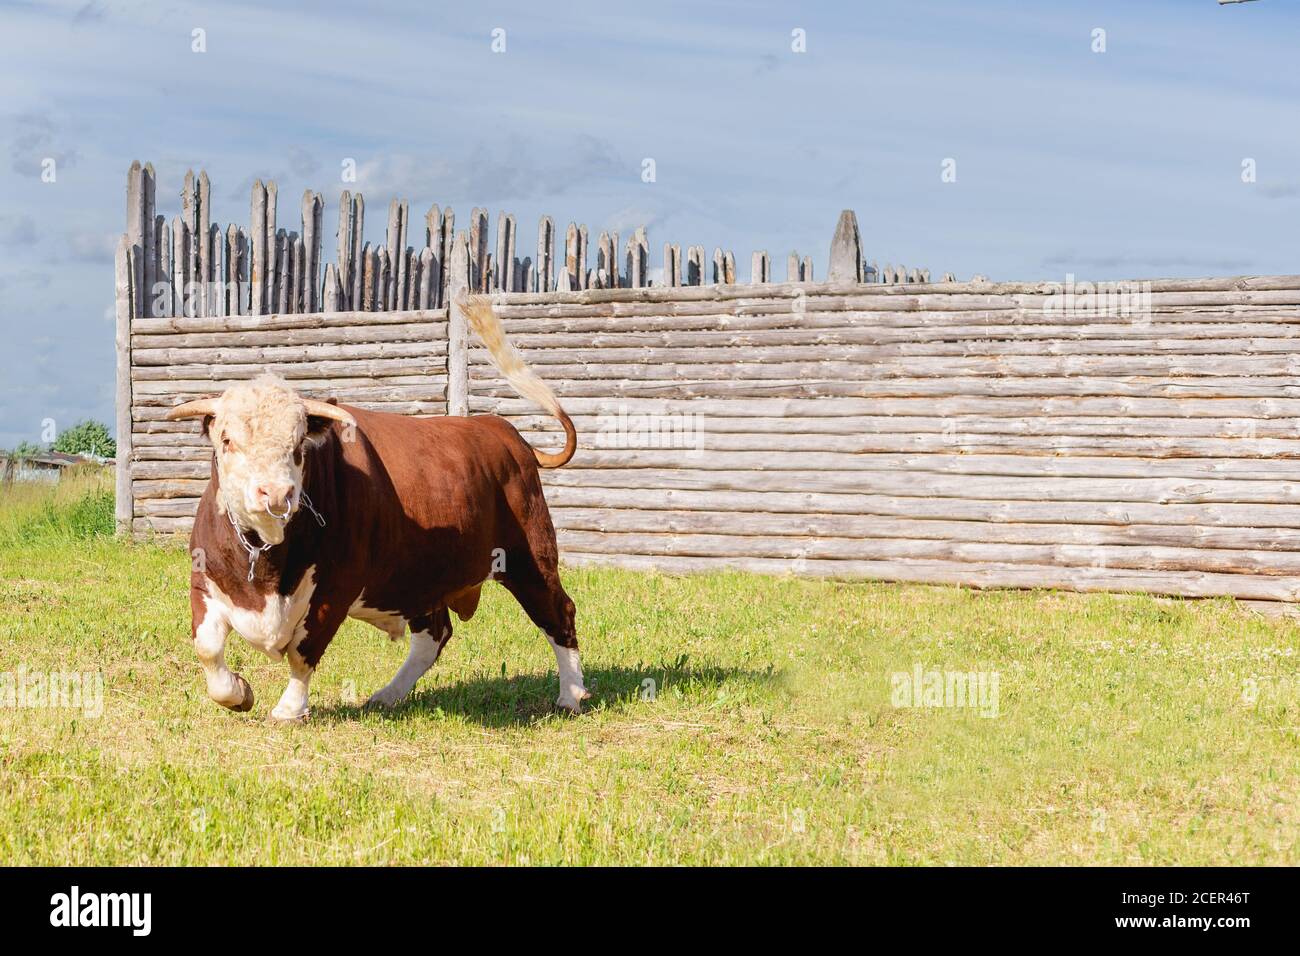 bull, grande toro con un anello nel naso, si trovava maestosamente in un lussureggiante prato estivo da una recinzione di legno, un toro di latte che pascolava in un prato verde. Orizzontale Foto Stock